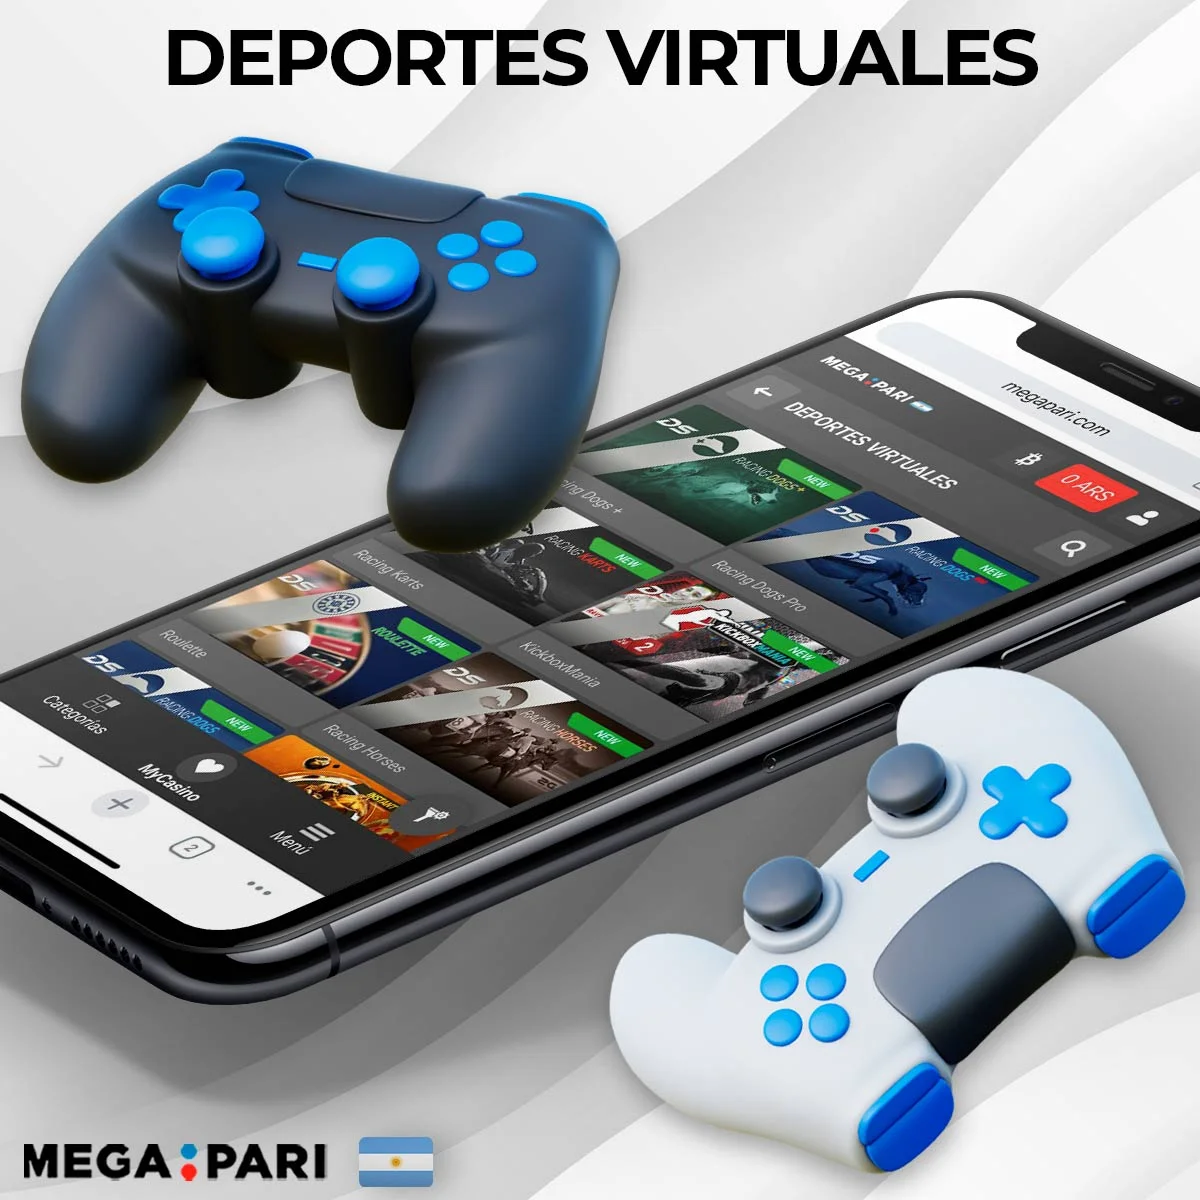 Apuestas en deportes virtuales en Megapari Argentina